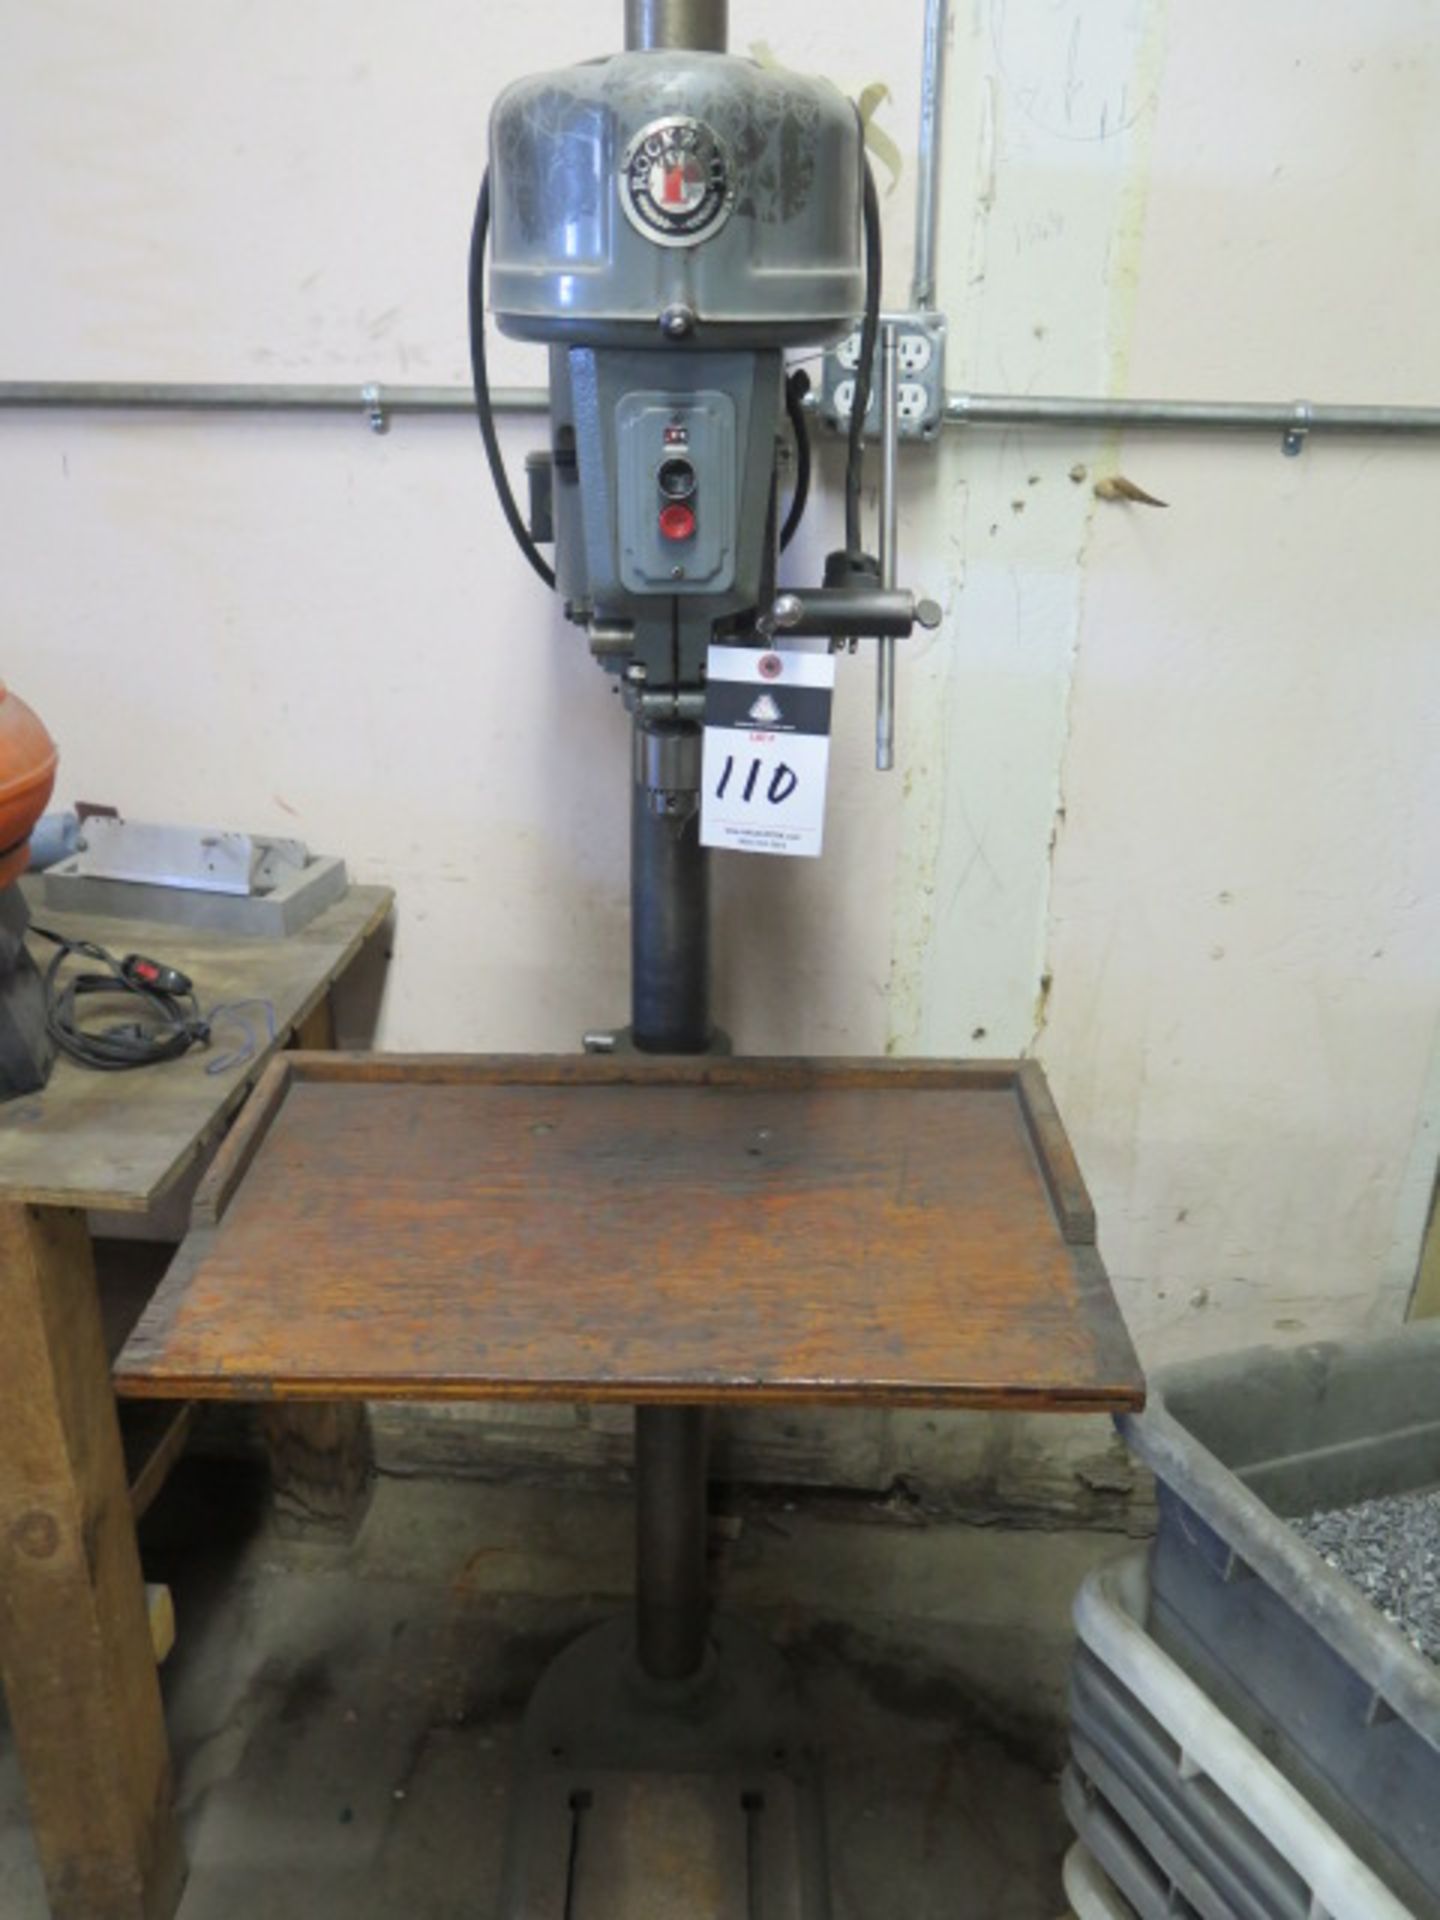 Rockwell Pedestal Drill Press